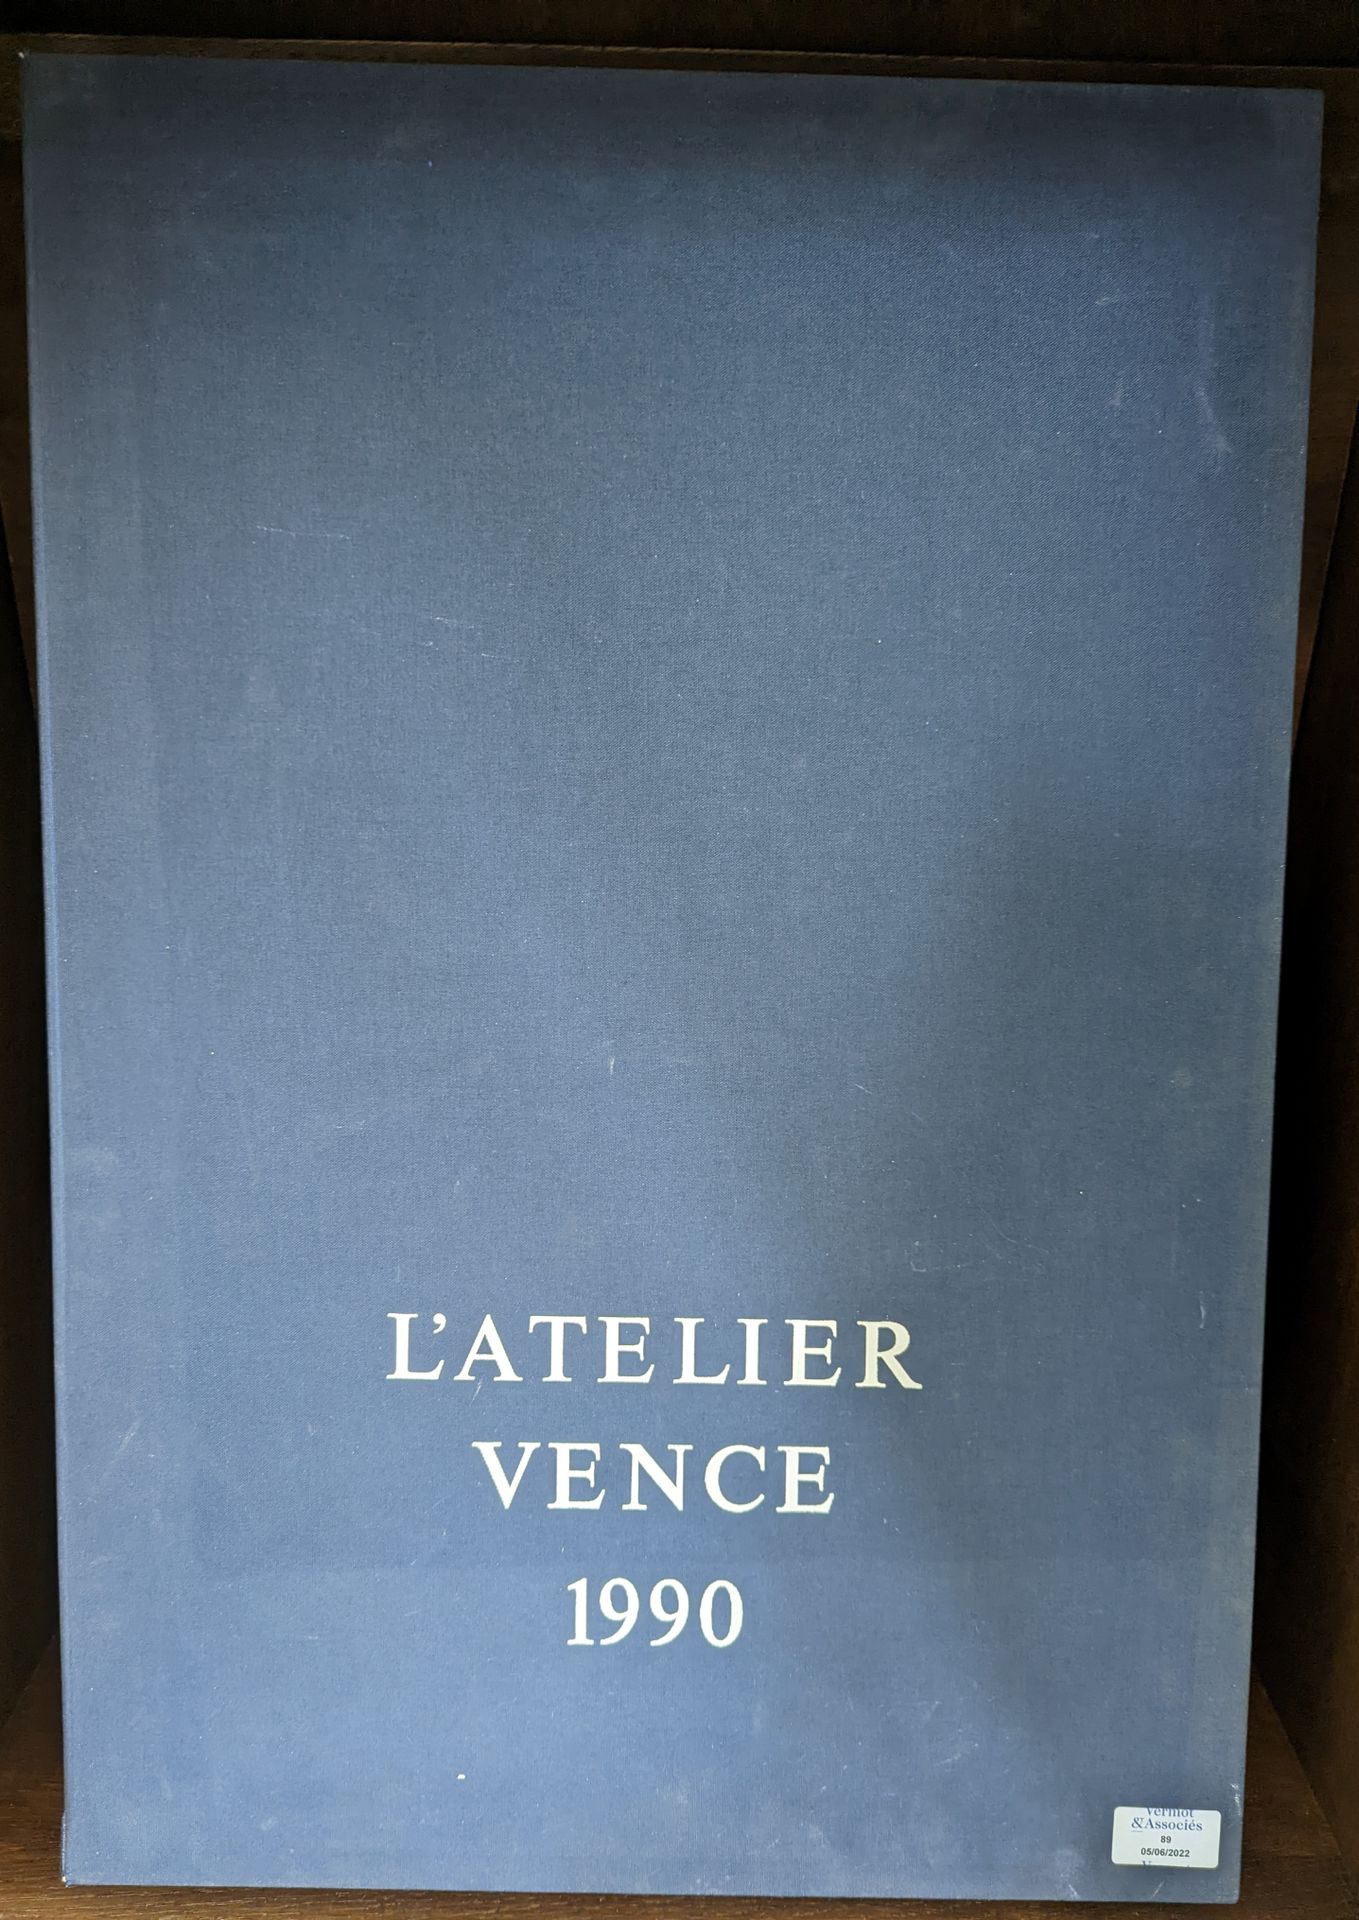 Null SCHULE VENCE

Das Atelier Vence, 1990

Porfolio mit Drucken von dreiundzwan&hellip;